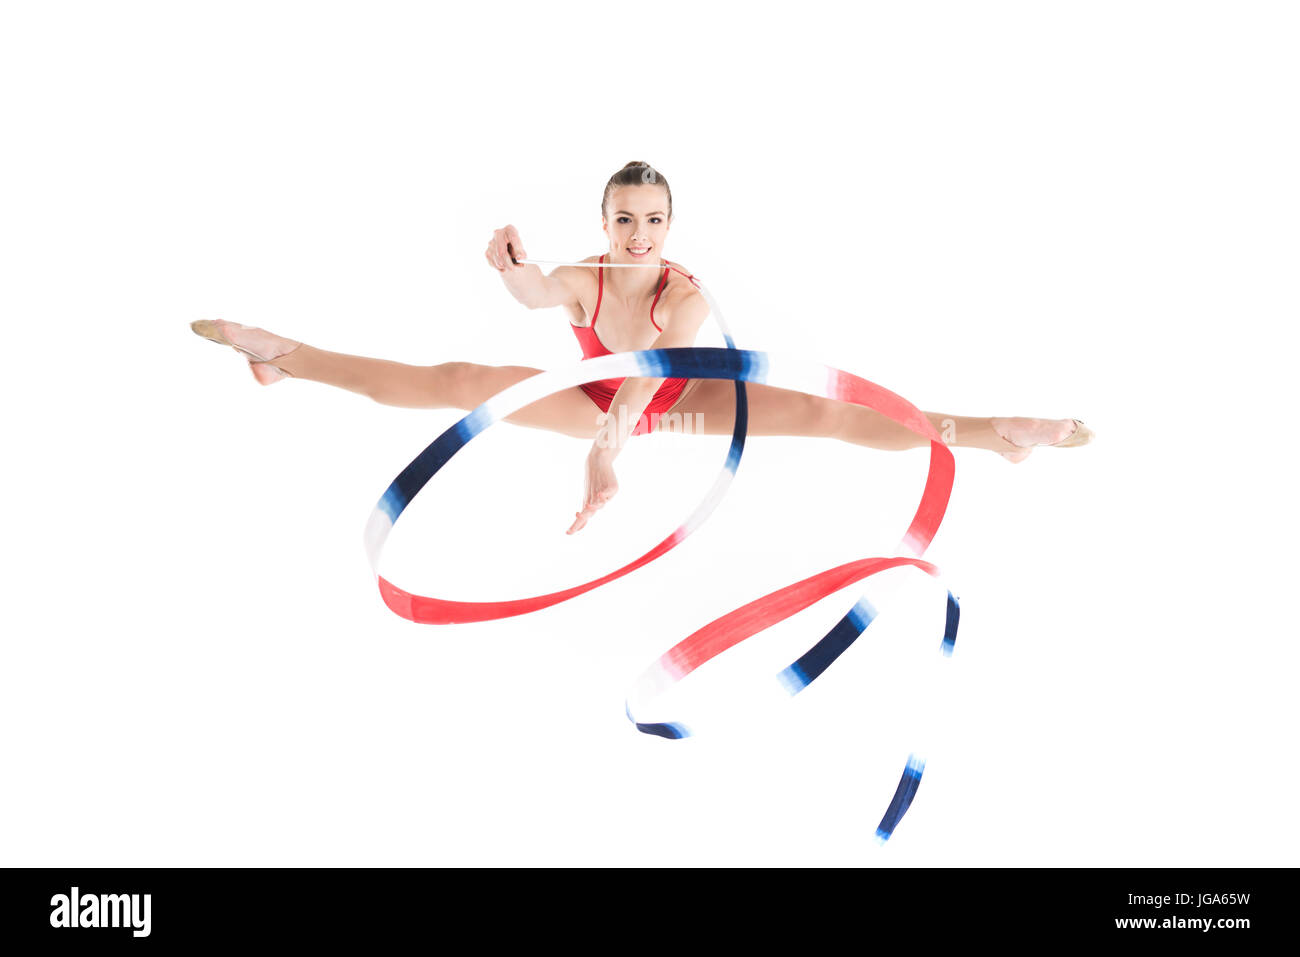 junge Frau rhythmischen Sportgymnastik mit bunten Seil springen und Blick in die Kamera Stockfoto